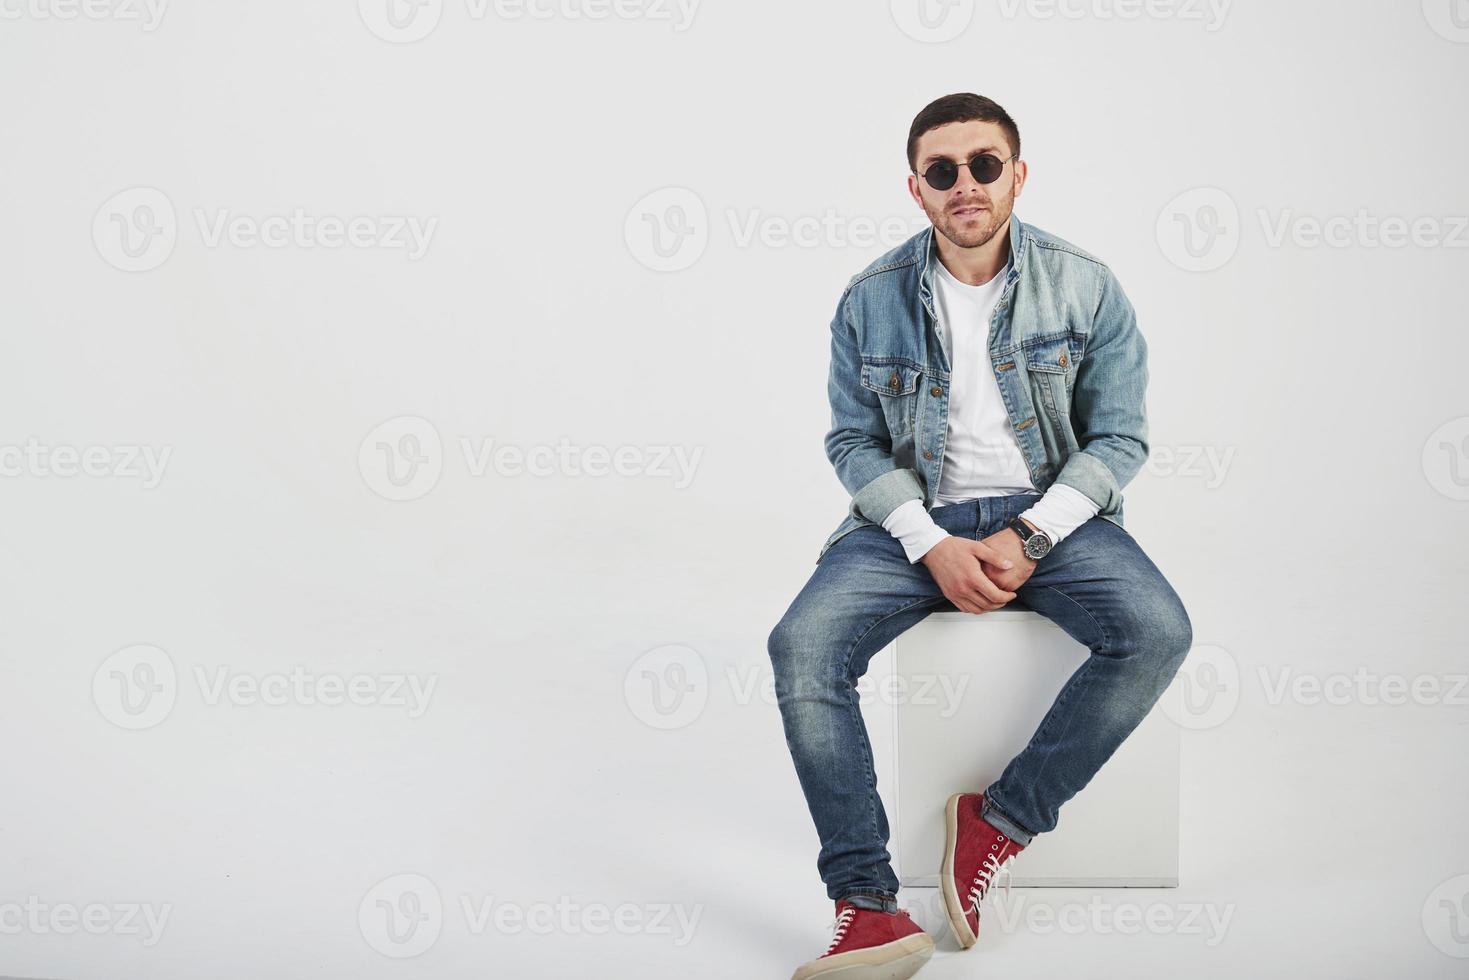 giovane hipster ragazzo con gli occhiali ridendo felicemente isolato su sfondo bianco foto